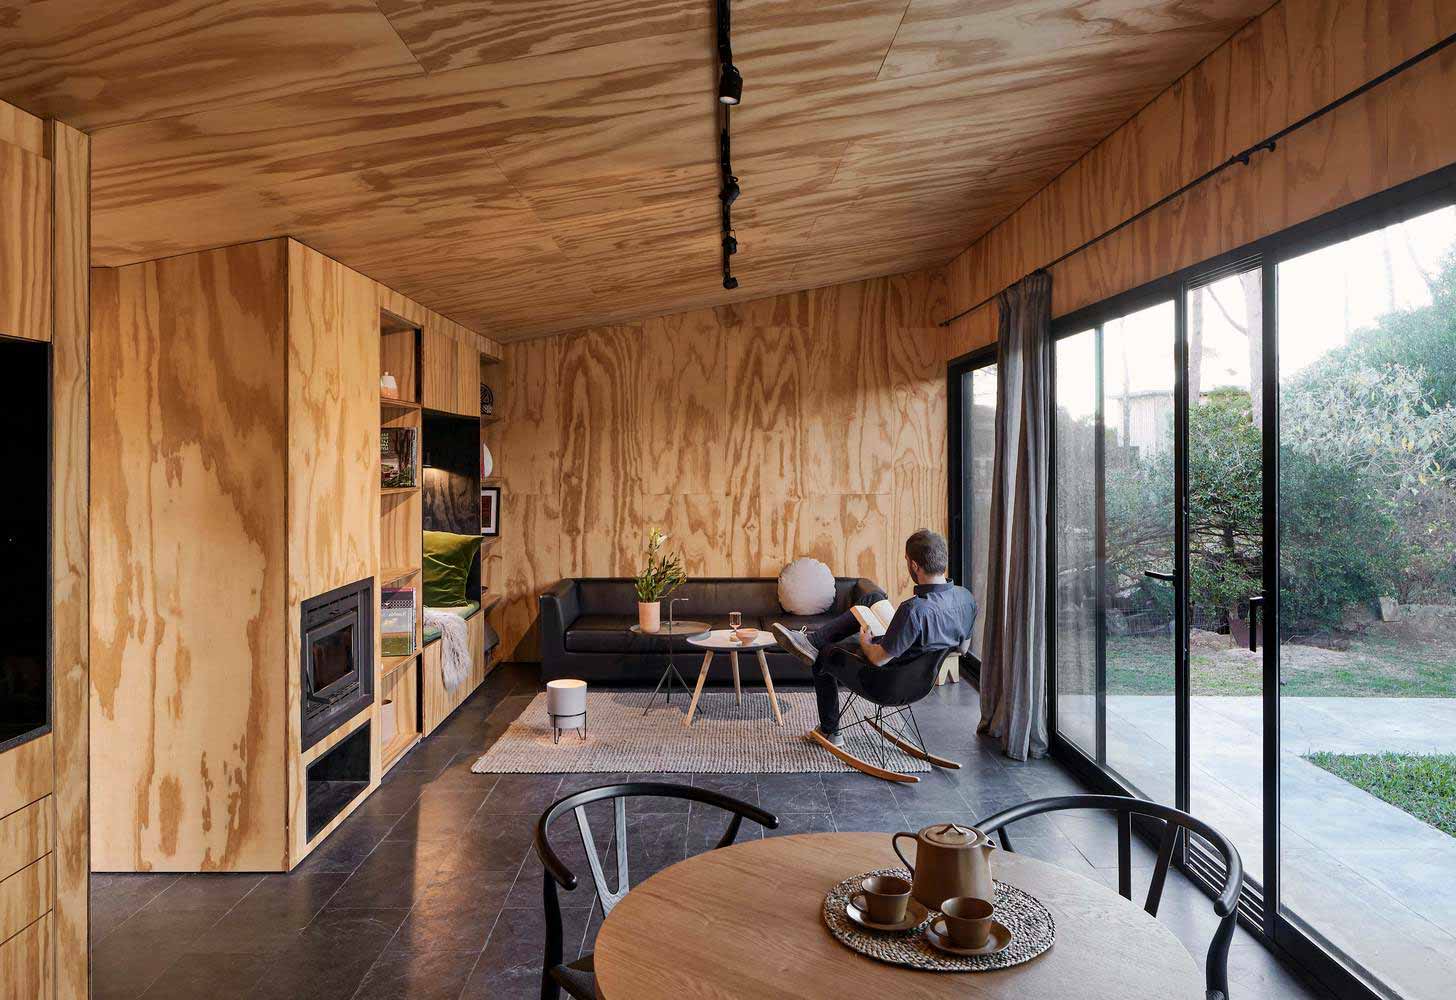 Identidade visual do interior de madeira compensada com a natureza